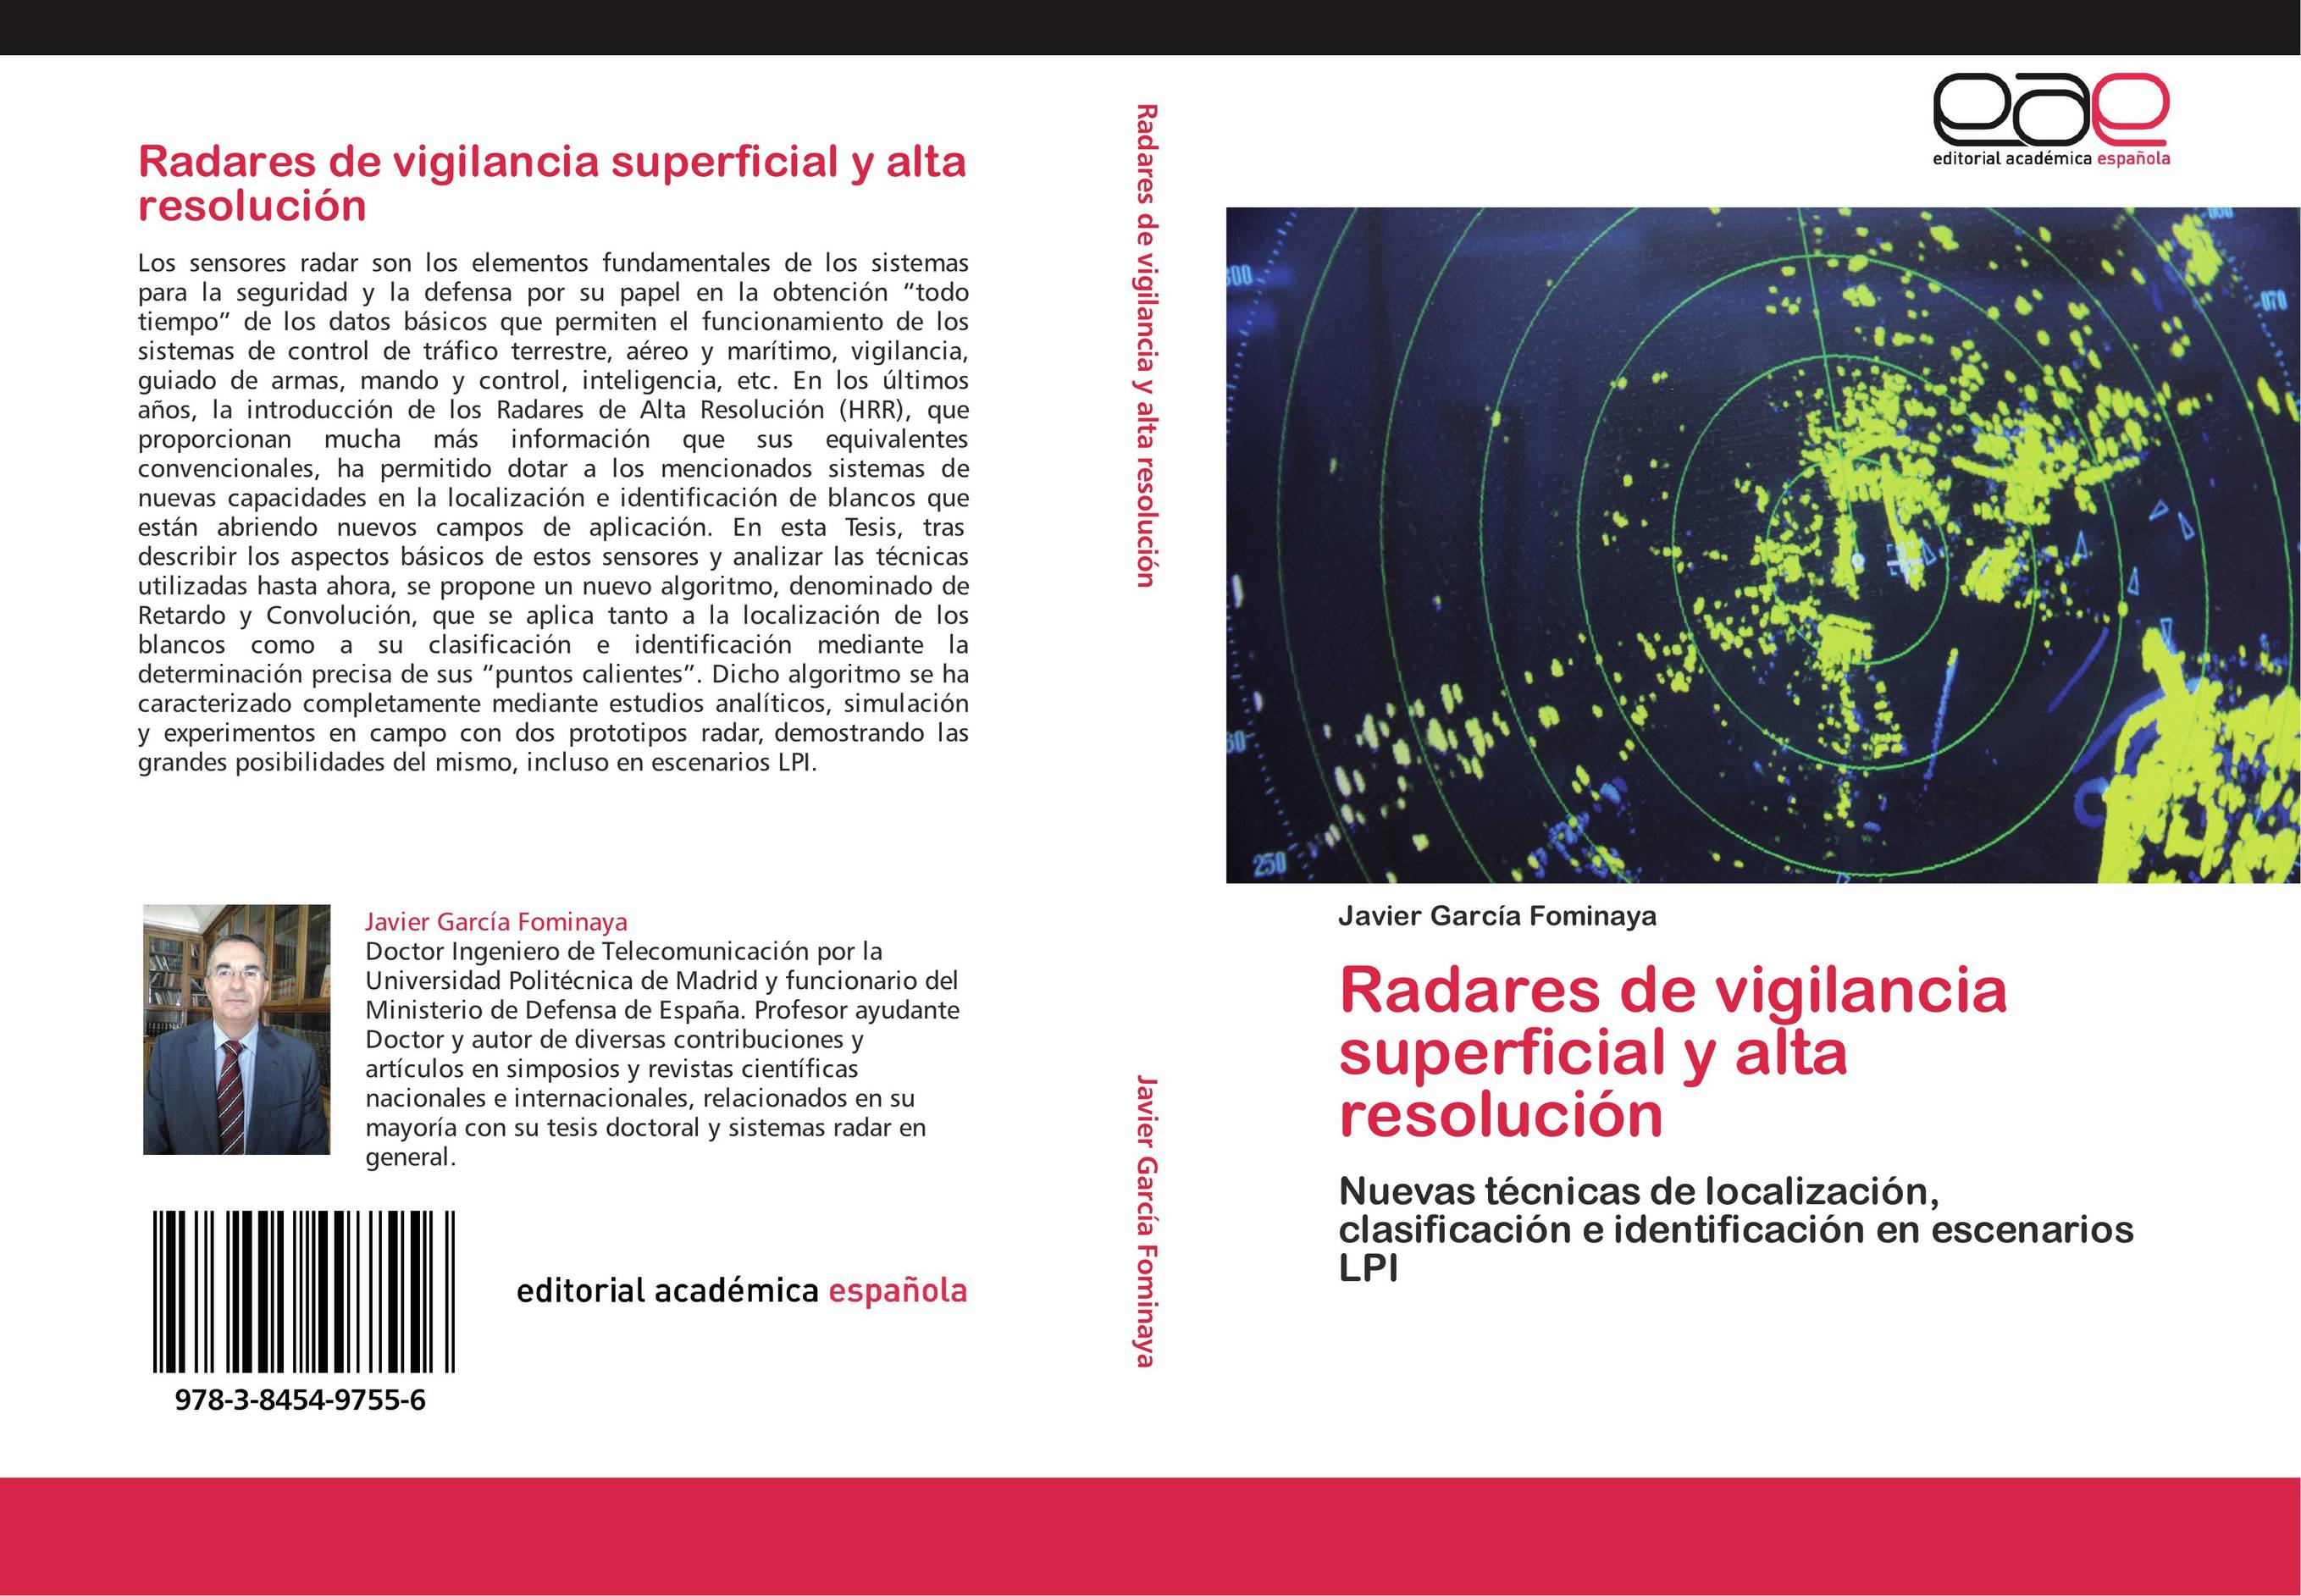 Radares de vigilancia superficial y alta resolución